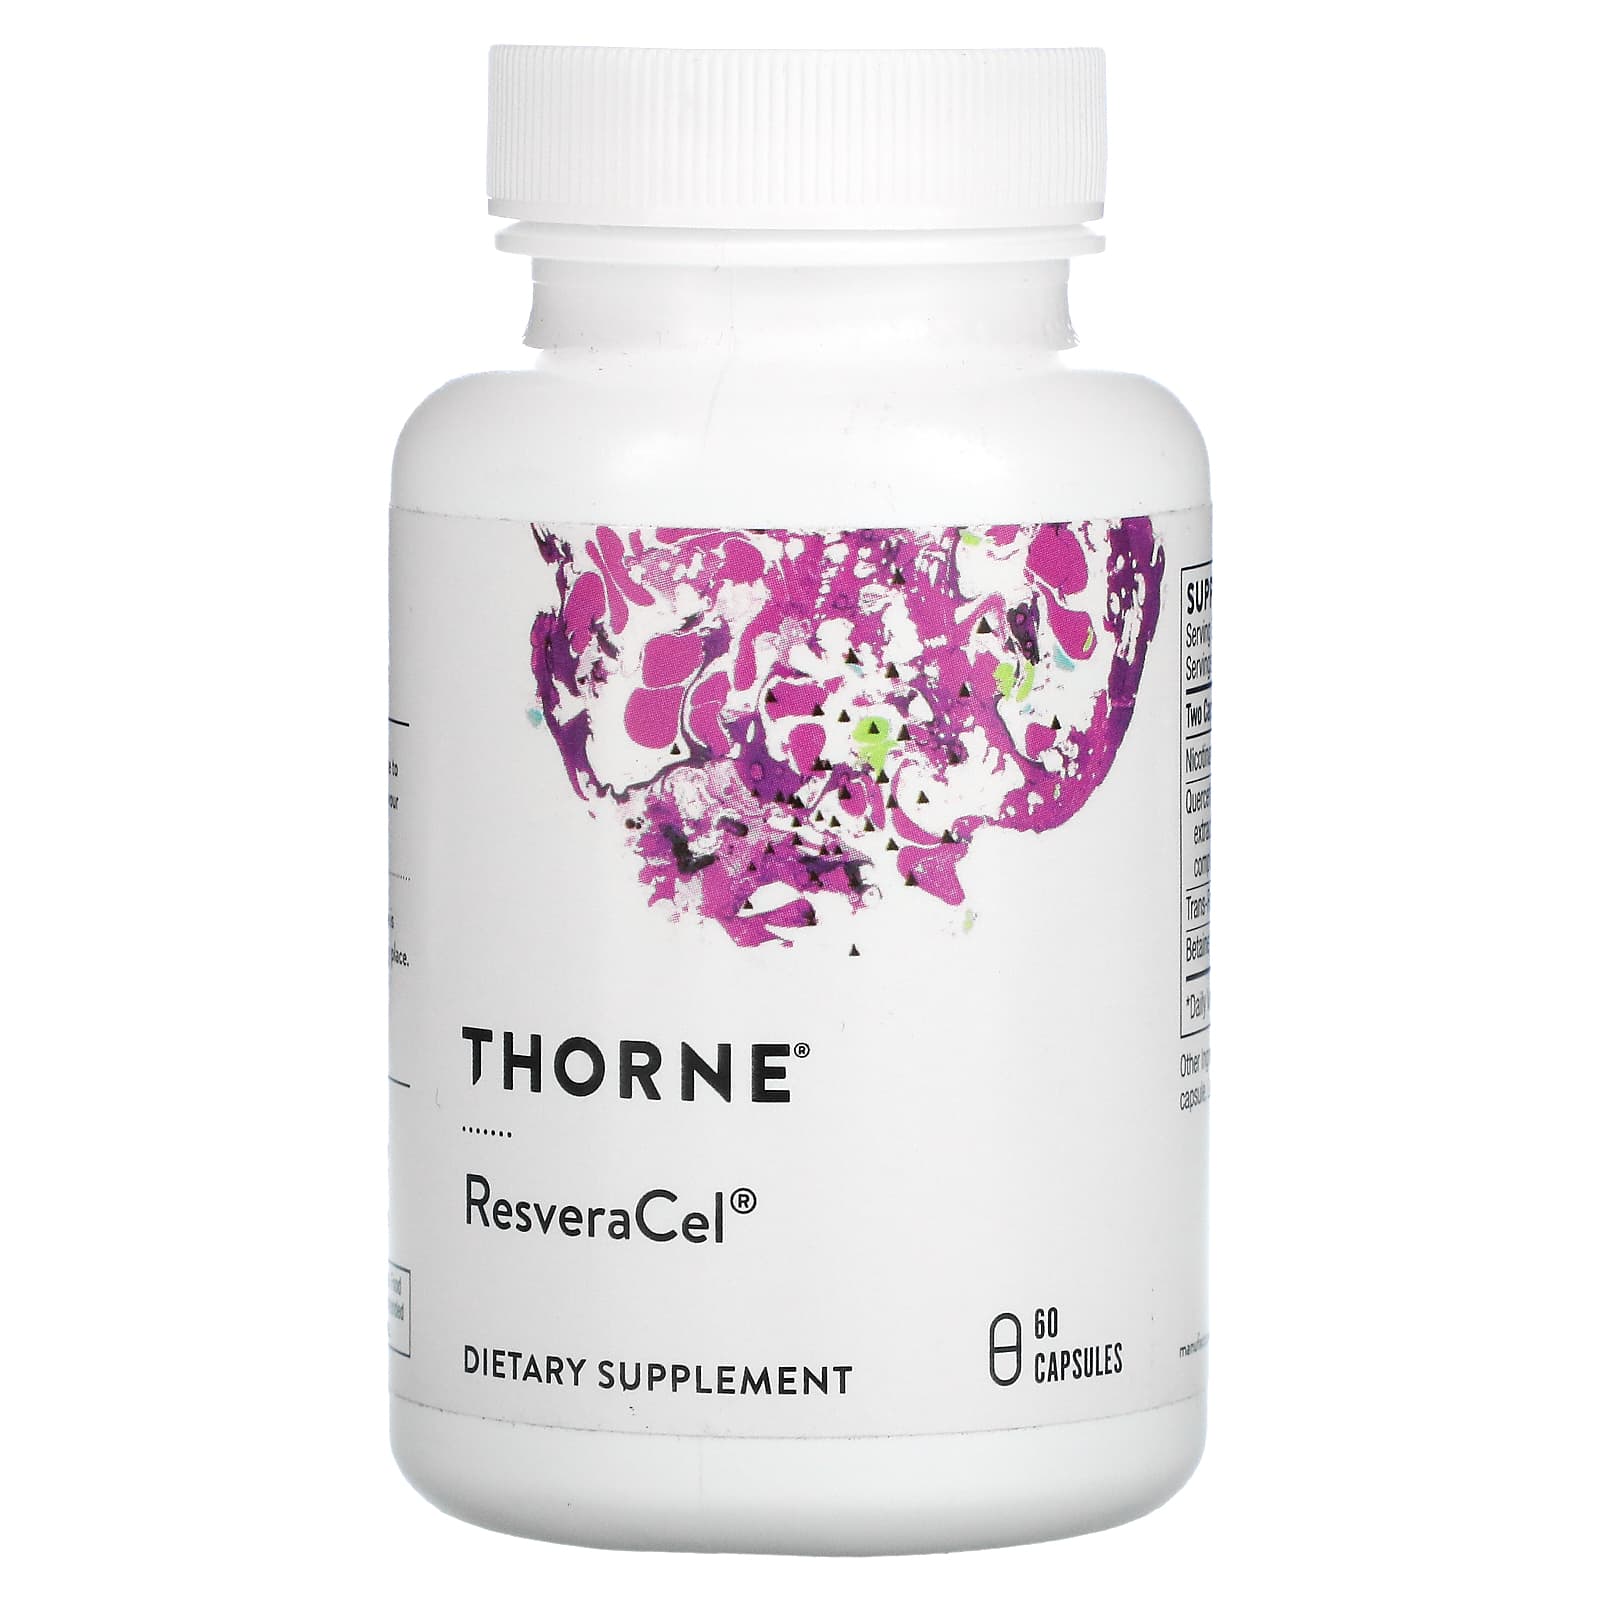 Пищевая Добавка Thorne ResveraCel, 60 капсул resveracel никотинамид рибозид thorne research 60 капсул